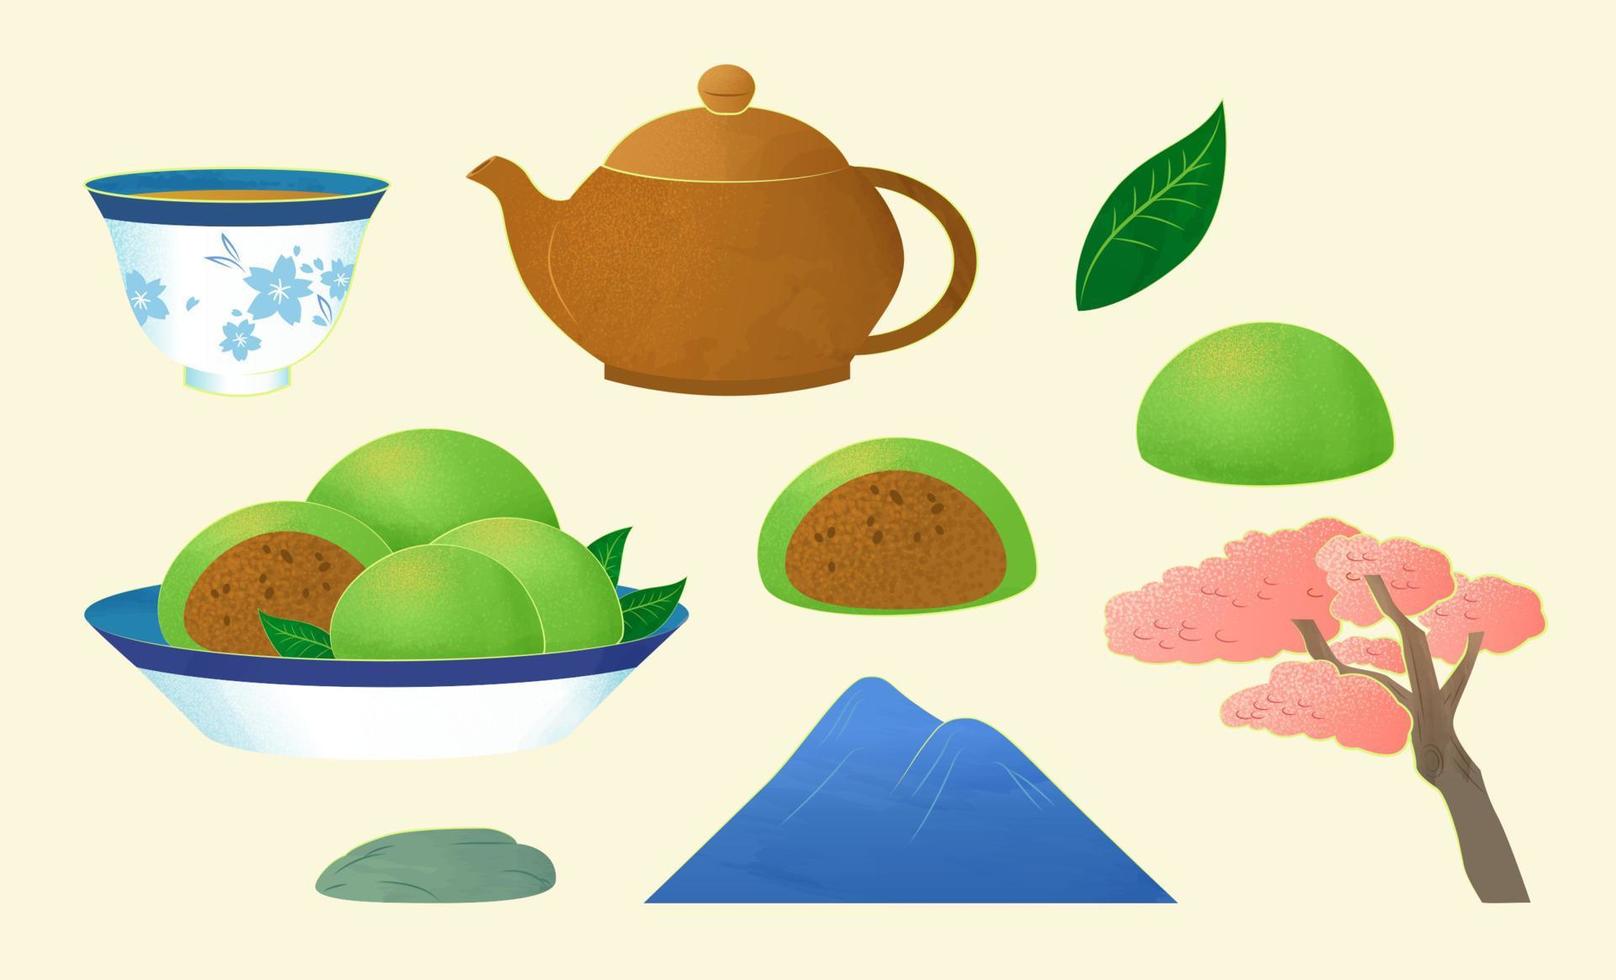 traditioneel qing ming festival decoratie set, inclusief thee beker, thee pot, groen rijst- ballen, berg, en roze boom. vector